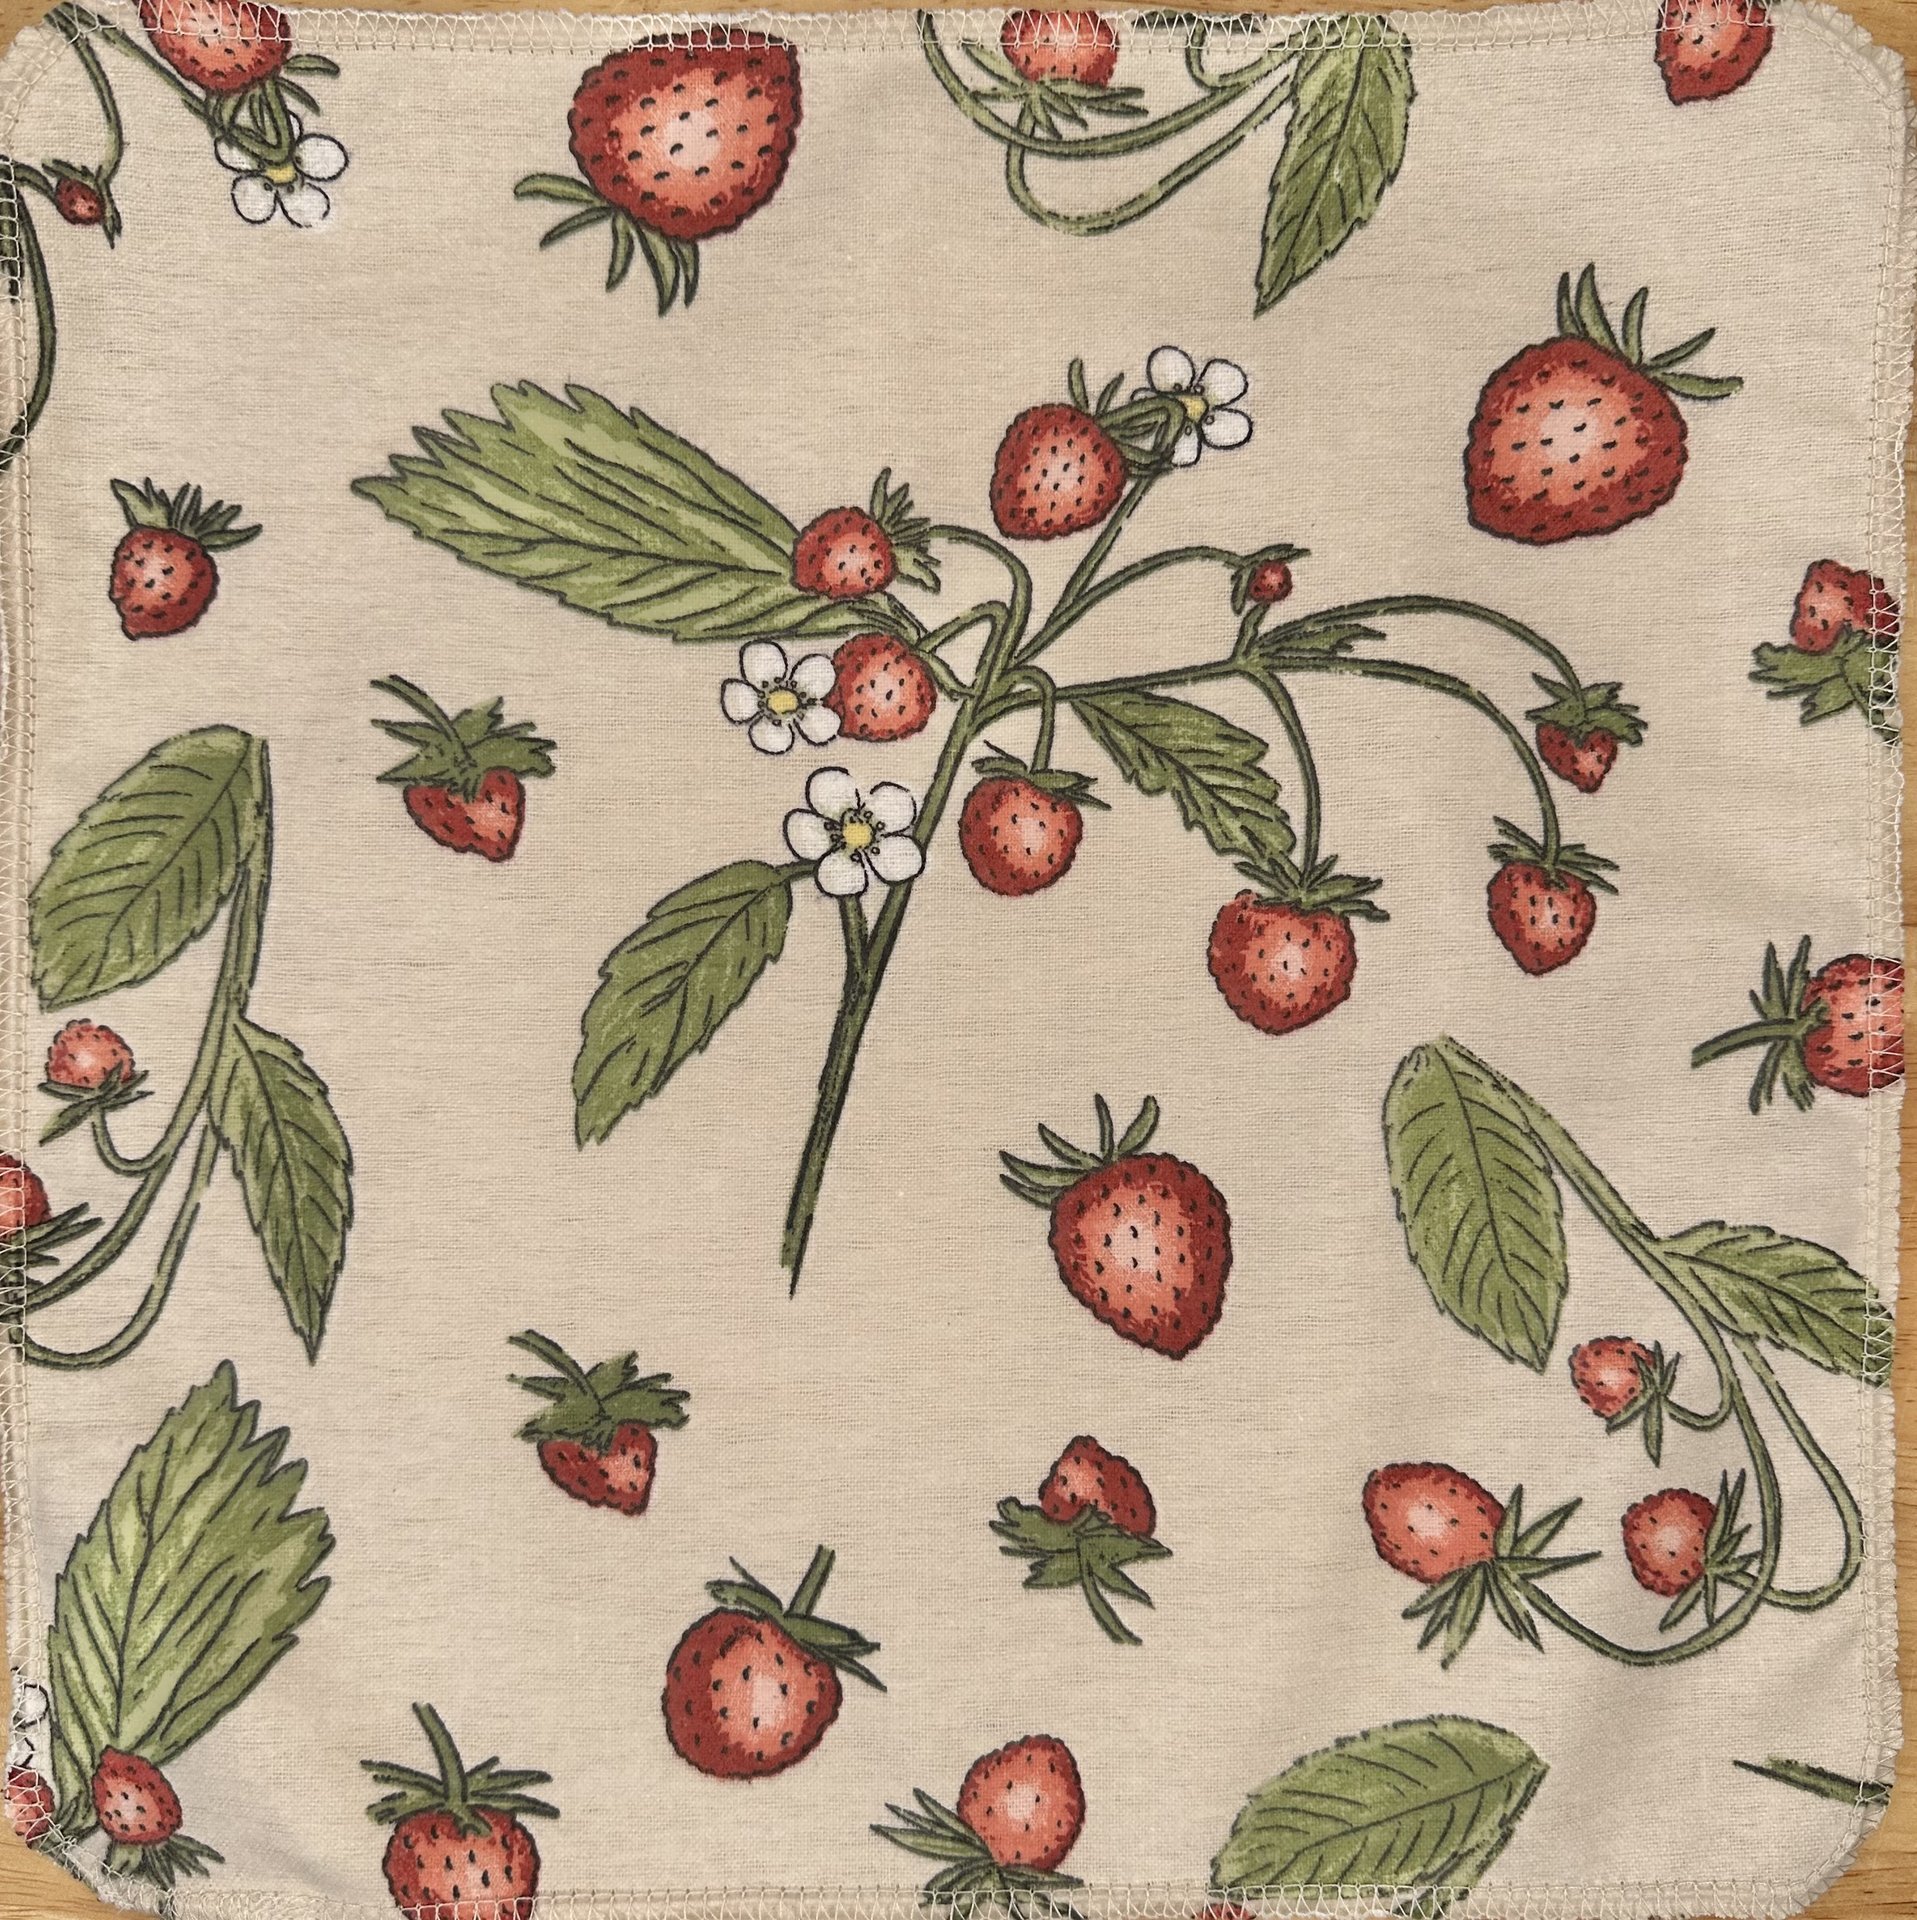 Strawberries & Greens Paperless Towels 